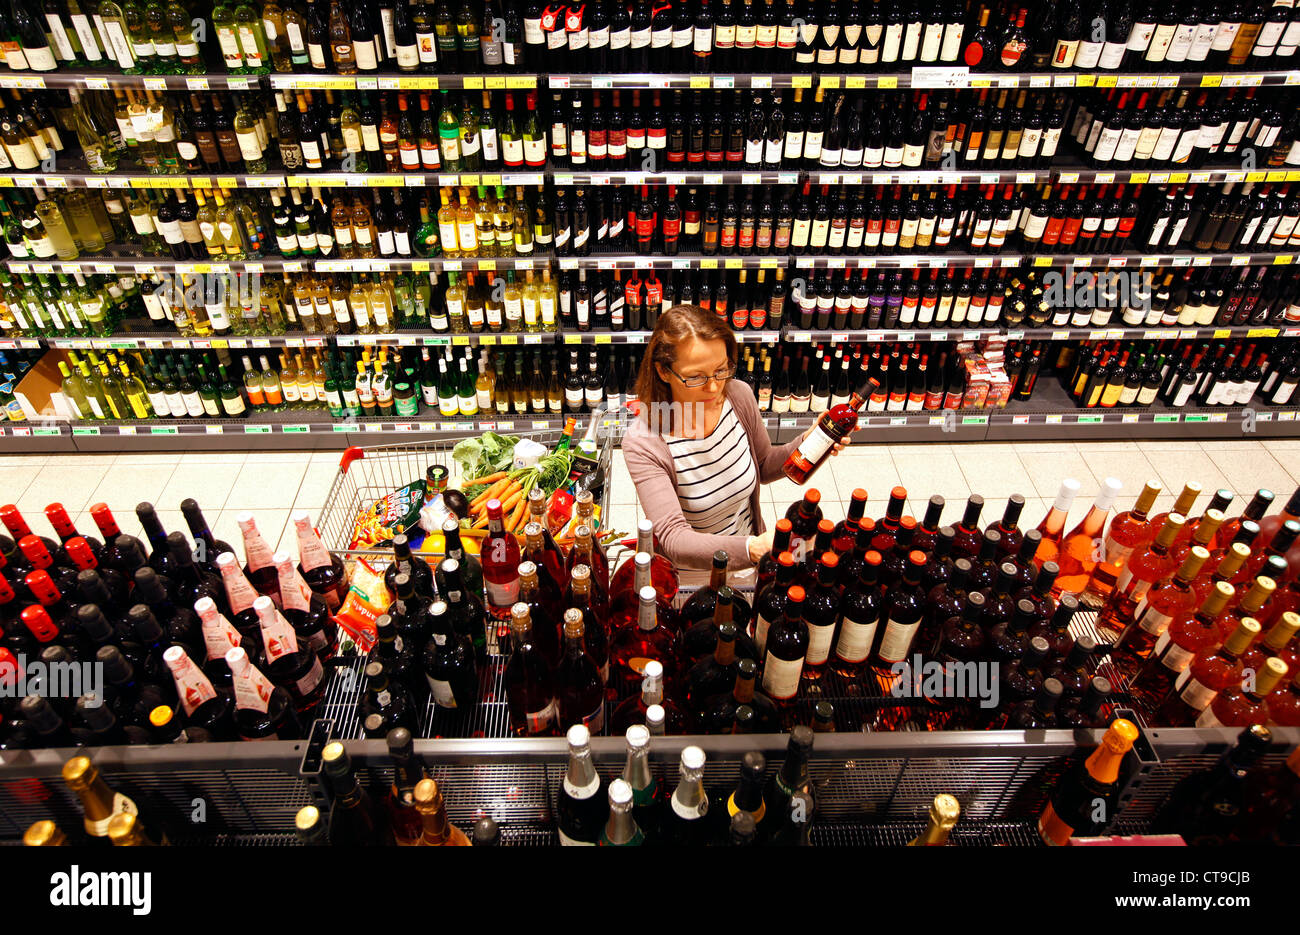 Frau ist in einem großen Supermarkt einkaufen. Getränkeabteilung, alkoholische Getränke, Spirituosen, Wein, Champagner. Stockfoto